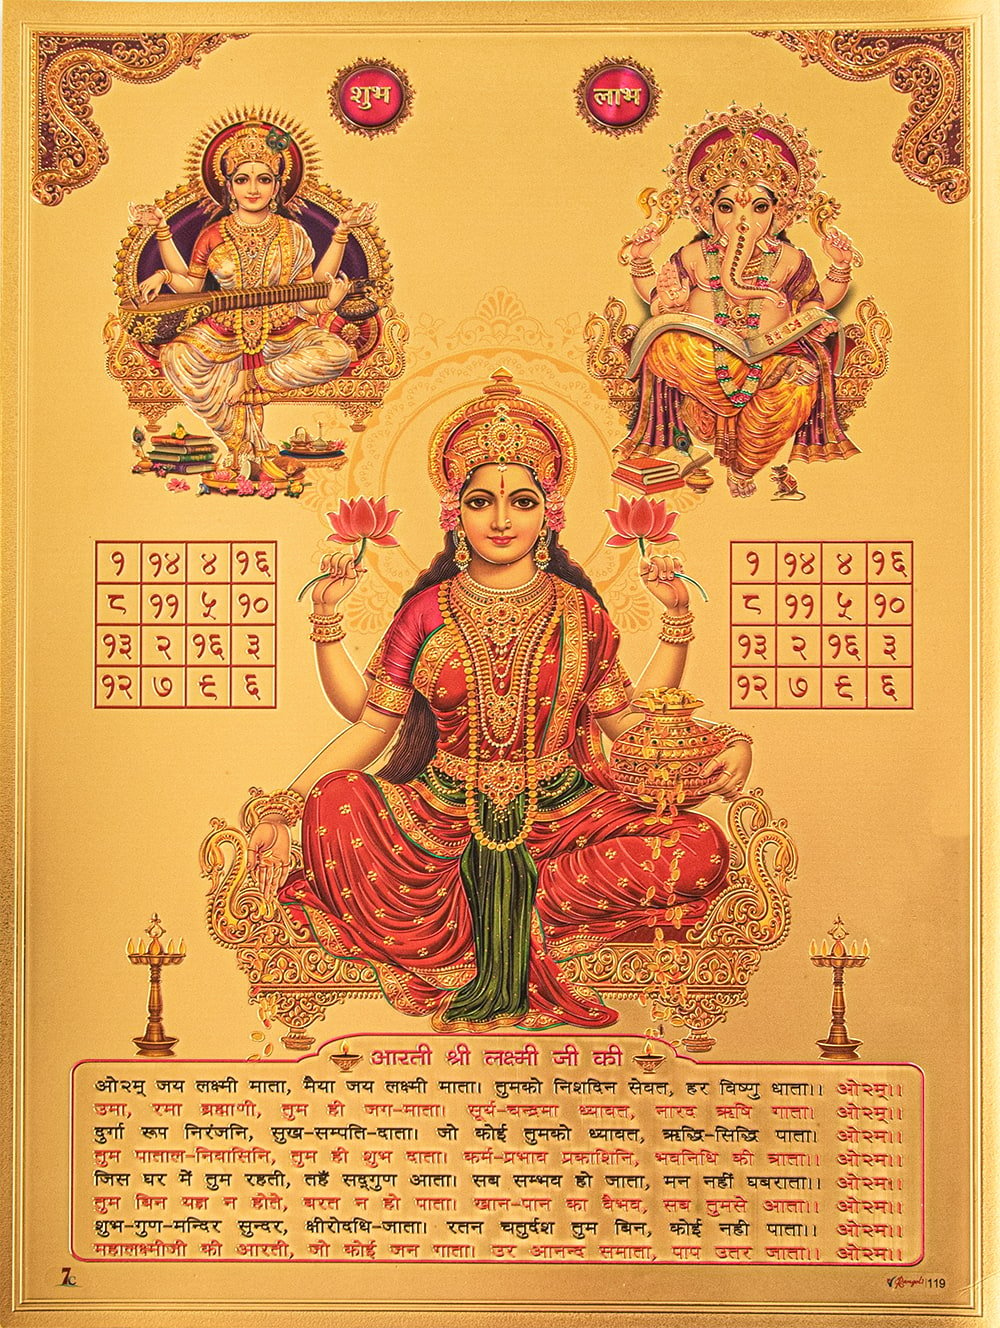 〔約40cm×約30cm〕インドのヒンドゥー神様ゴールドポスター - ラクシュミー・サラスヴァティ・ガネーシャ1枚目の説明写真です